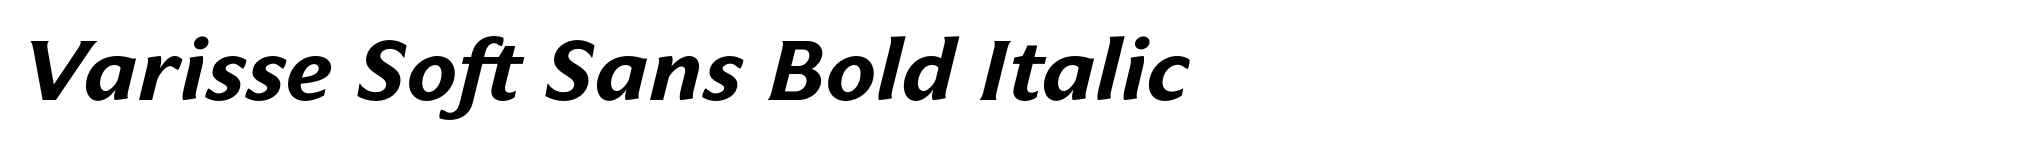 Varisse Soft Sans Bold Italic image